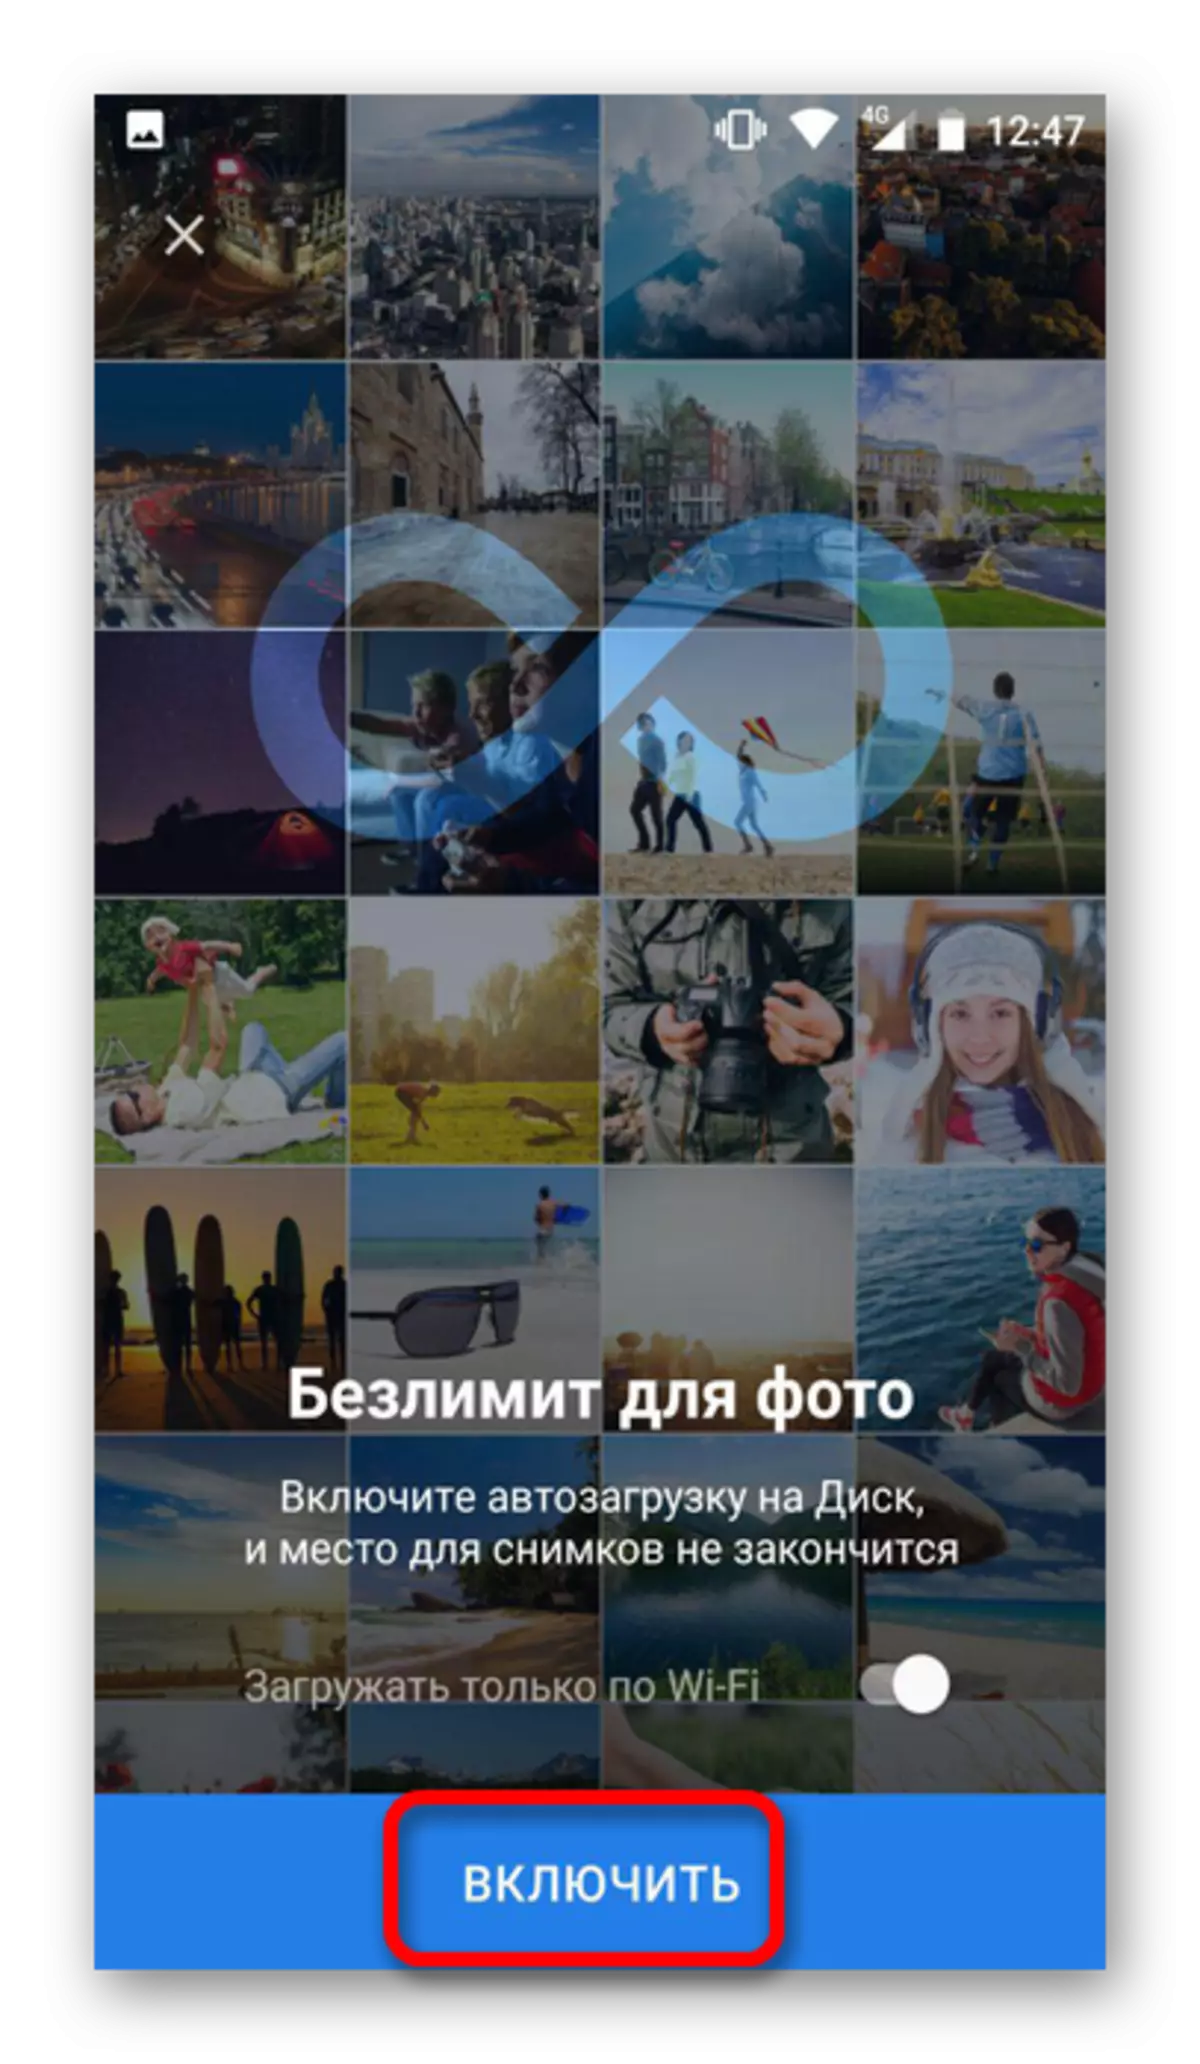 Befetsje autolad-bestannen fan Yandex-skiif op Android